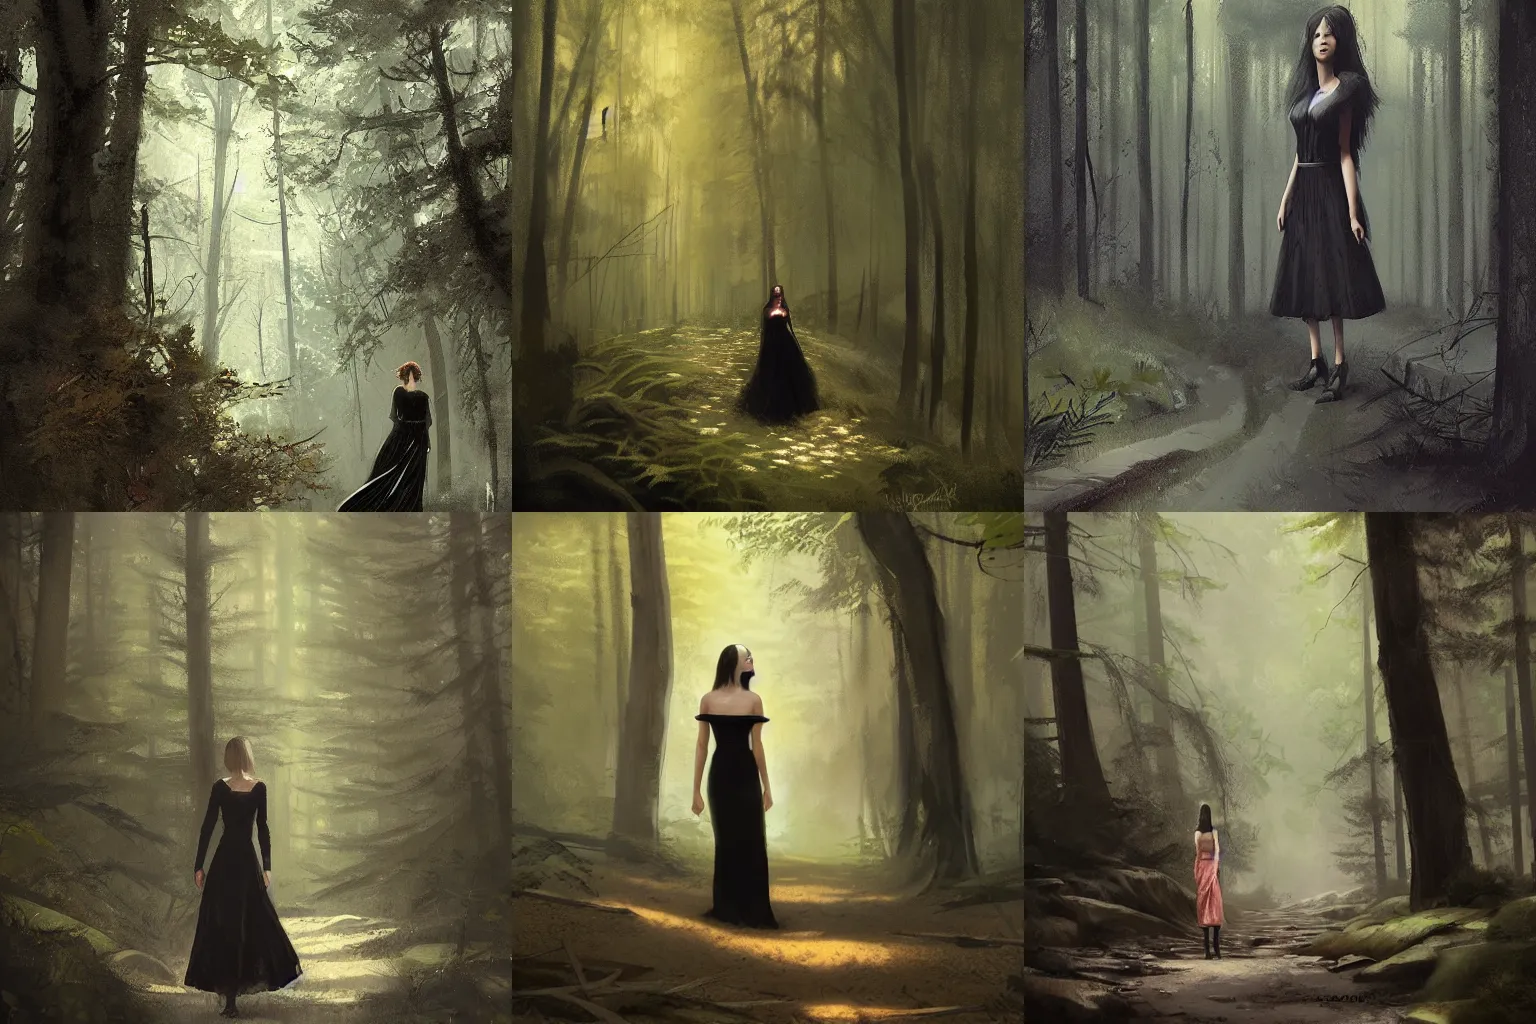 Prompt: woman wearing a black dress in a forest, by greg rutkowski